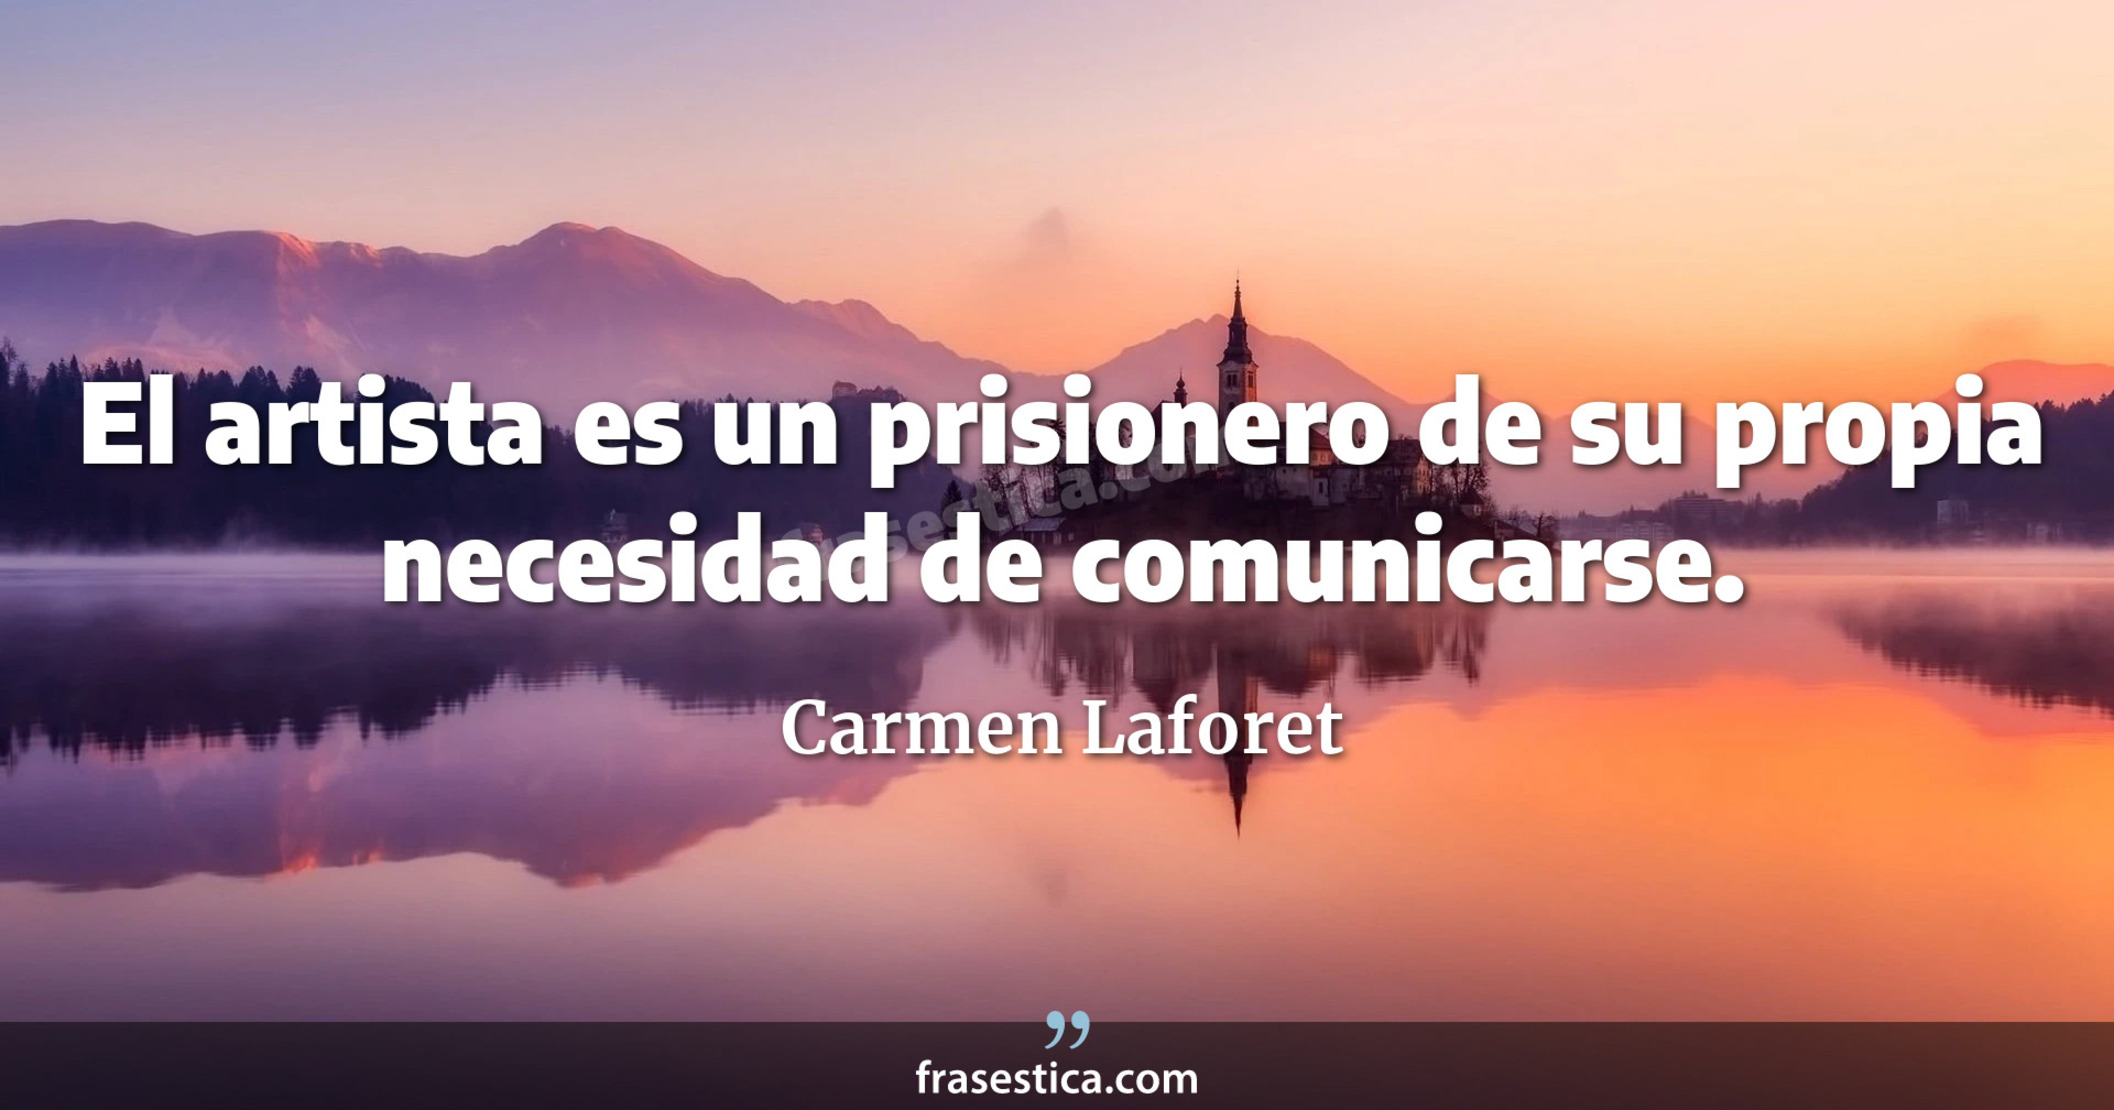 El artista es un prisionero de su propia necesidad de comunicarse. - Carmen Laforet